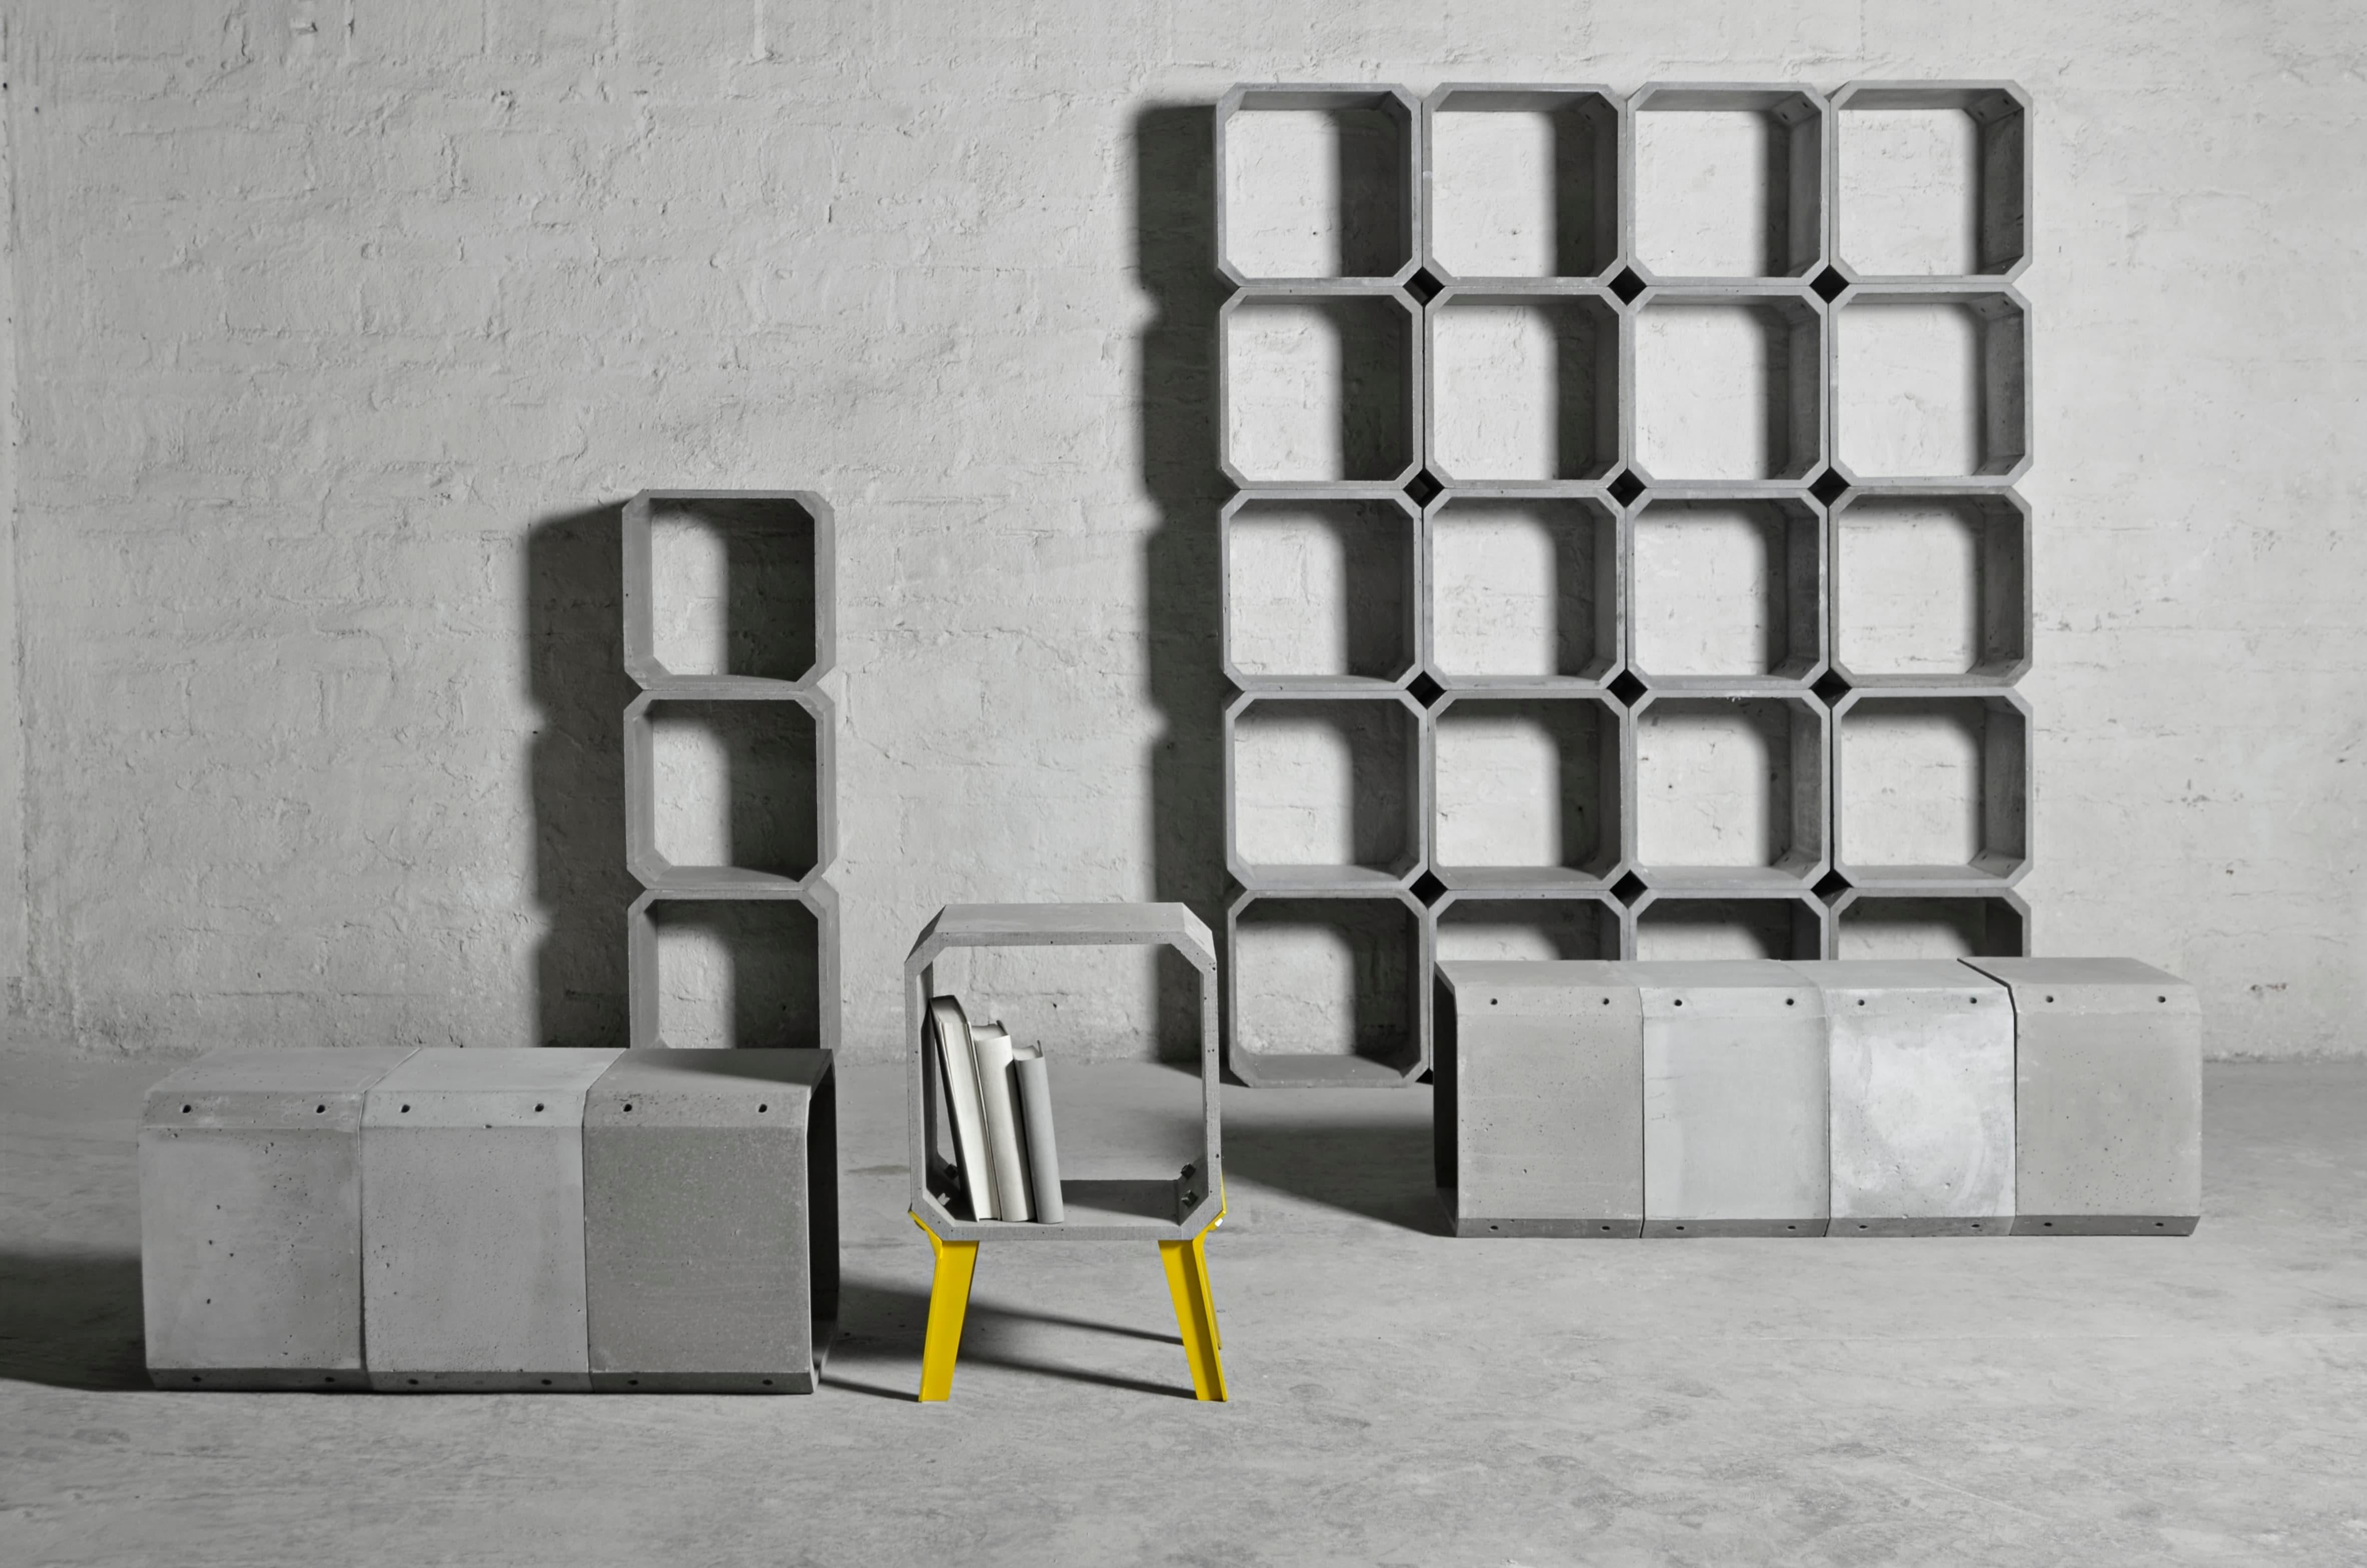 kOU est un entrepôt modulaire en béton
par Bentu Design

[Blocs vendus individuellement]

Dimension d'un bloc : 36 x 36 x 26cm

Les meubles de Bentu Design tirent leur singularité de la simplicité de leurs formes et de leurs matériaux. Conçus et